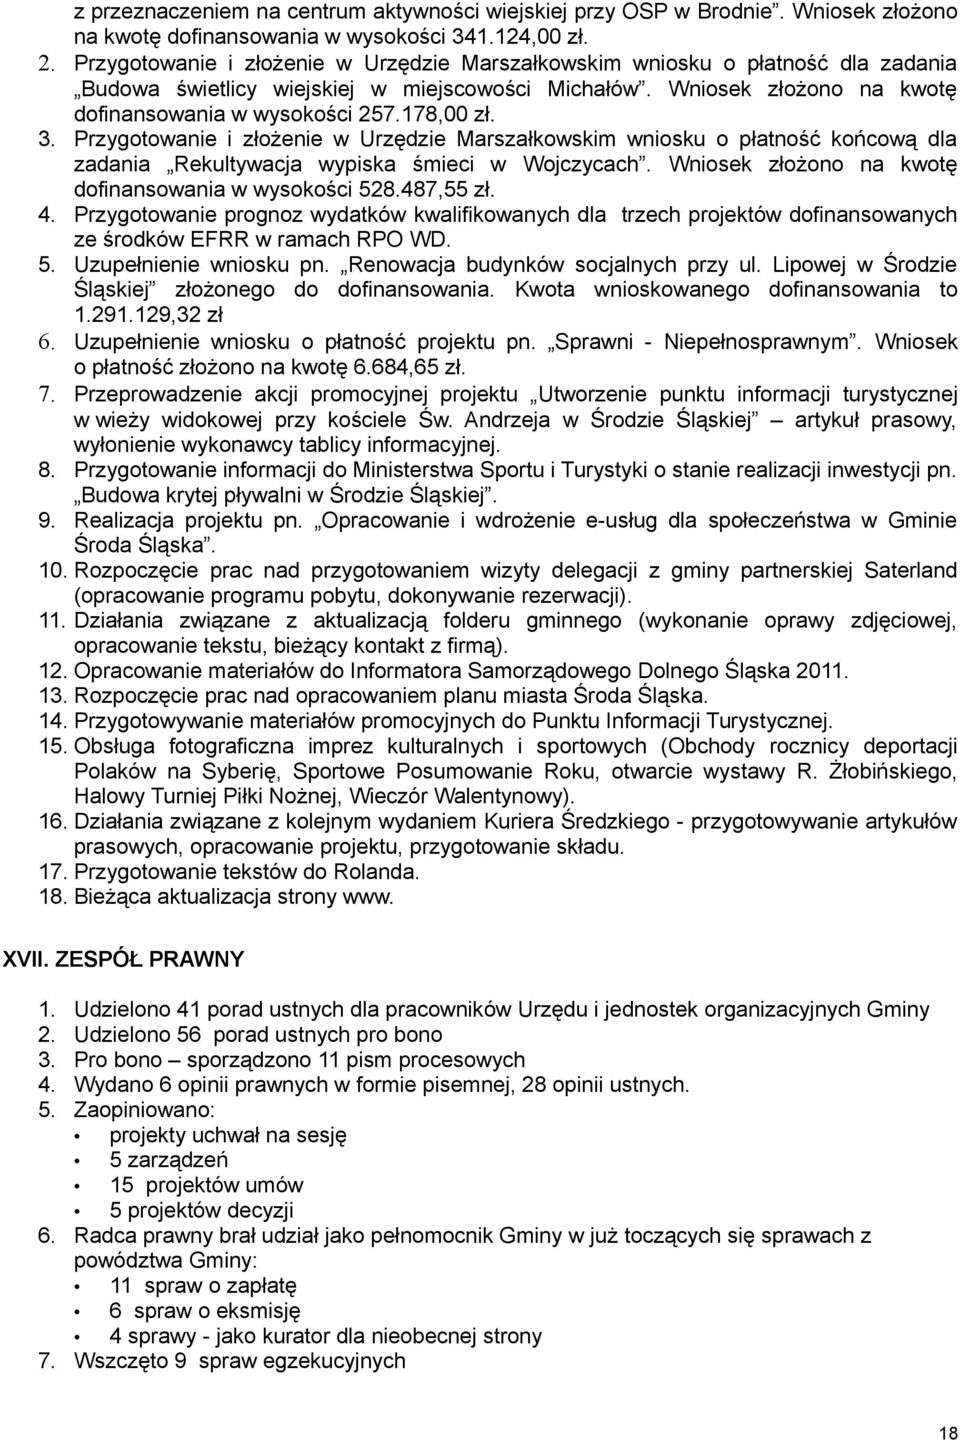 3. Przygotowanie i złożenie w Urzędzie Marszałkowskim wniosku o płatność końcową dla zadania Rekultywacja wypiska śmieci w Wojczycach. Wniosek złożono na kwotę dofinansowania w wysokości 528.